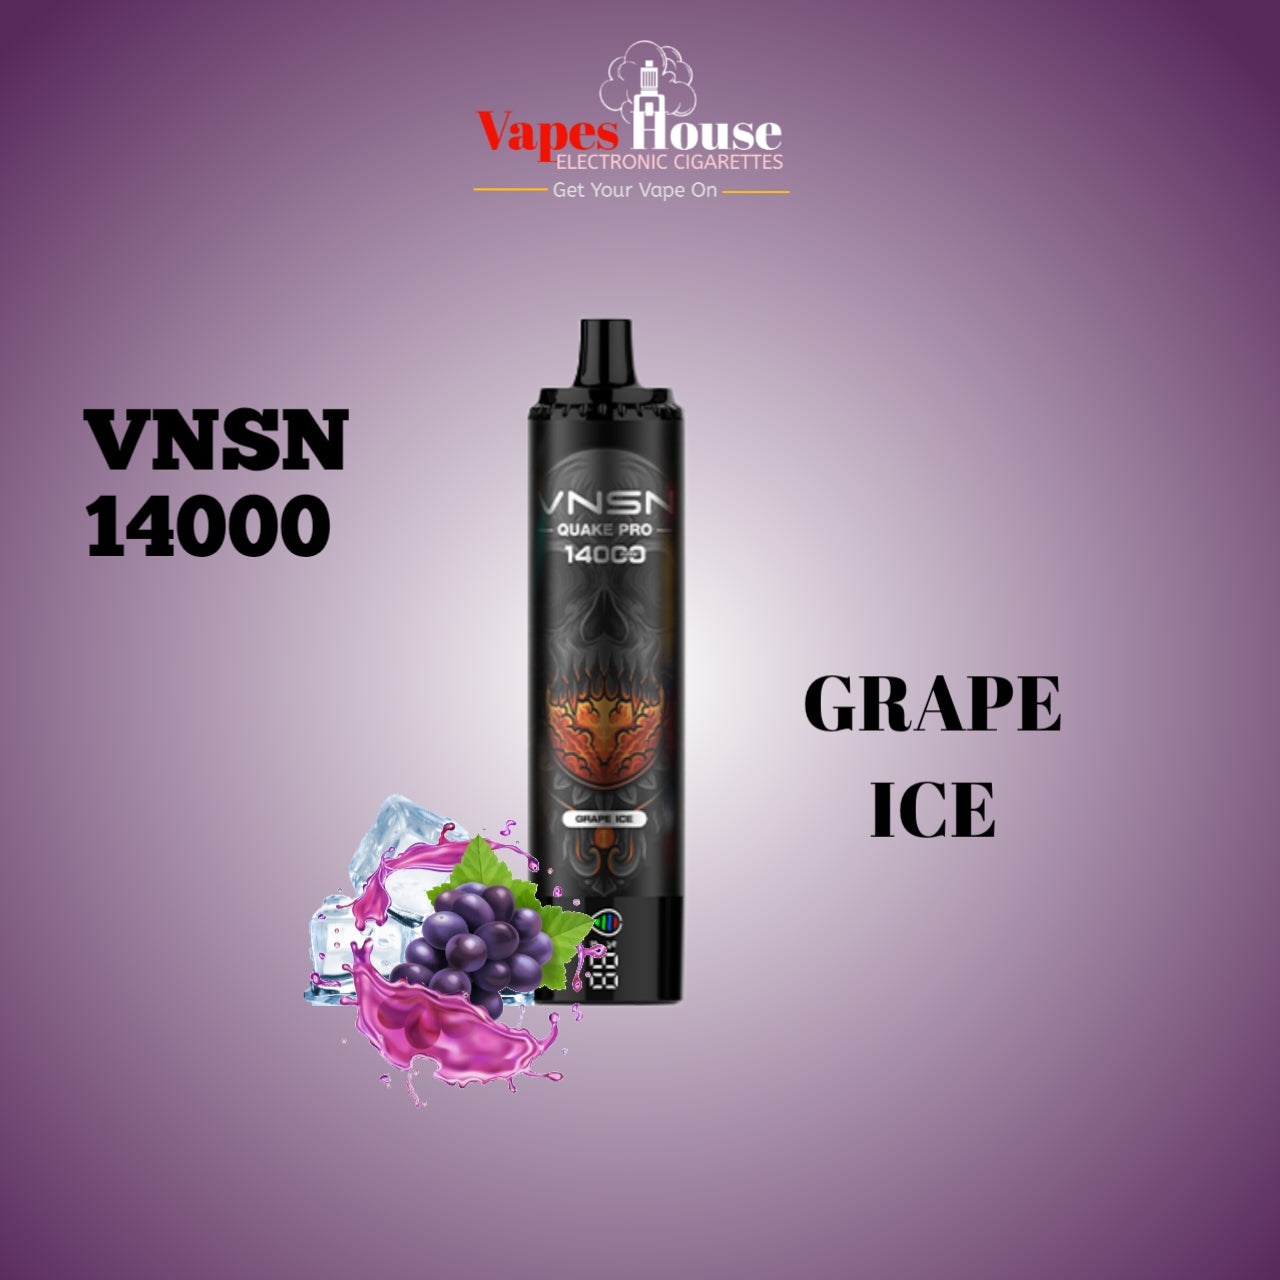 VNSN QUAKE PRO 14000 GRAPE ICE